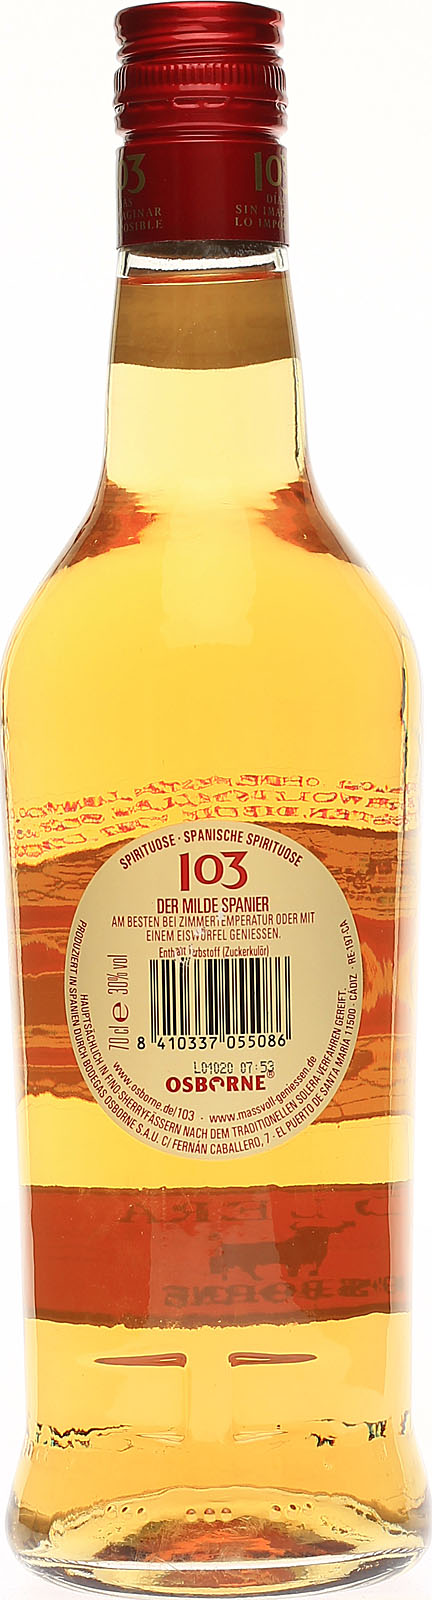 Osborne 103 Etiqueta Blanca Spirituose 0,7 Liter 30% Vo